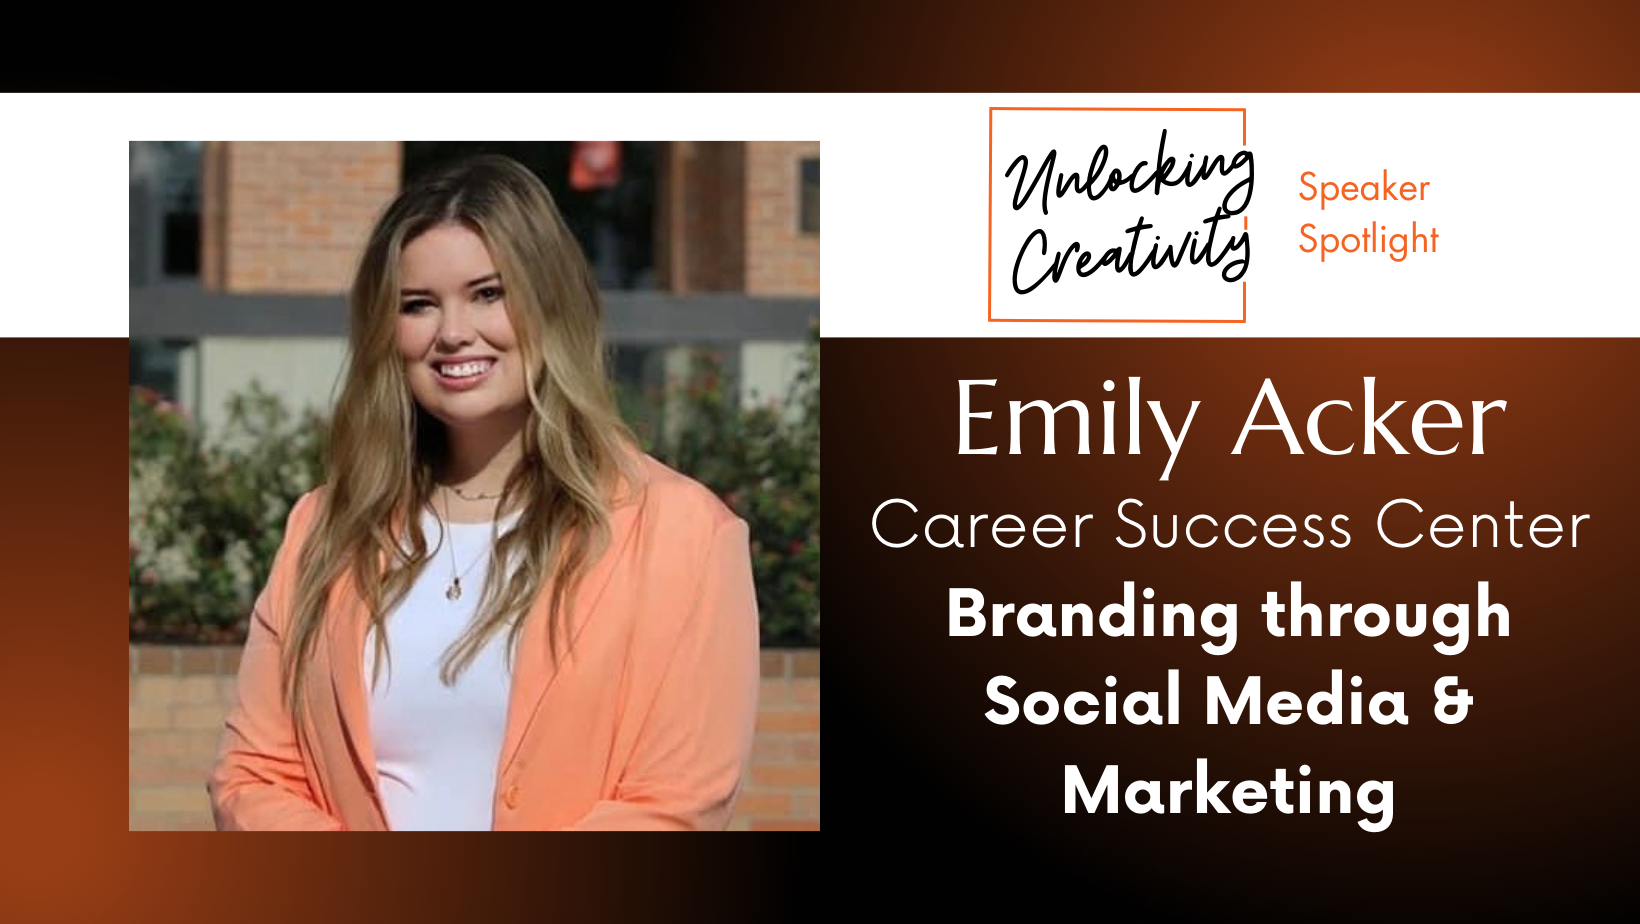 Emily Acker, Branding through Social Media & Marketing